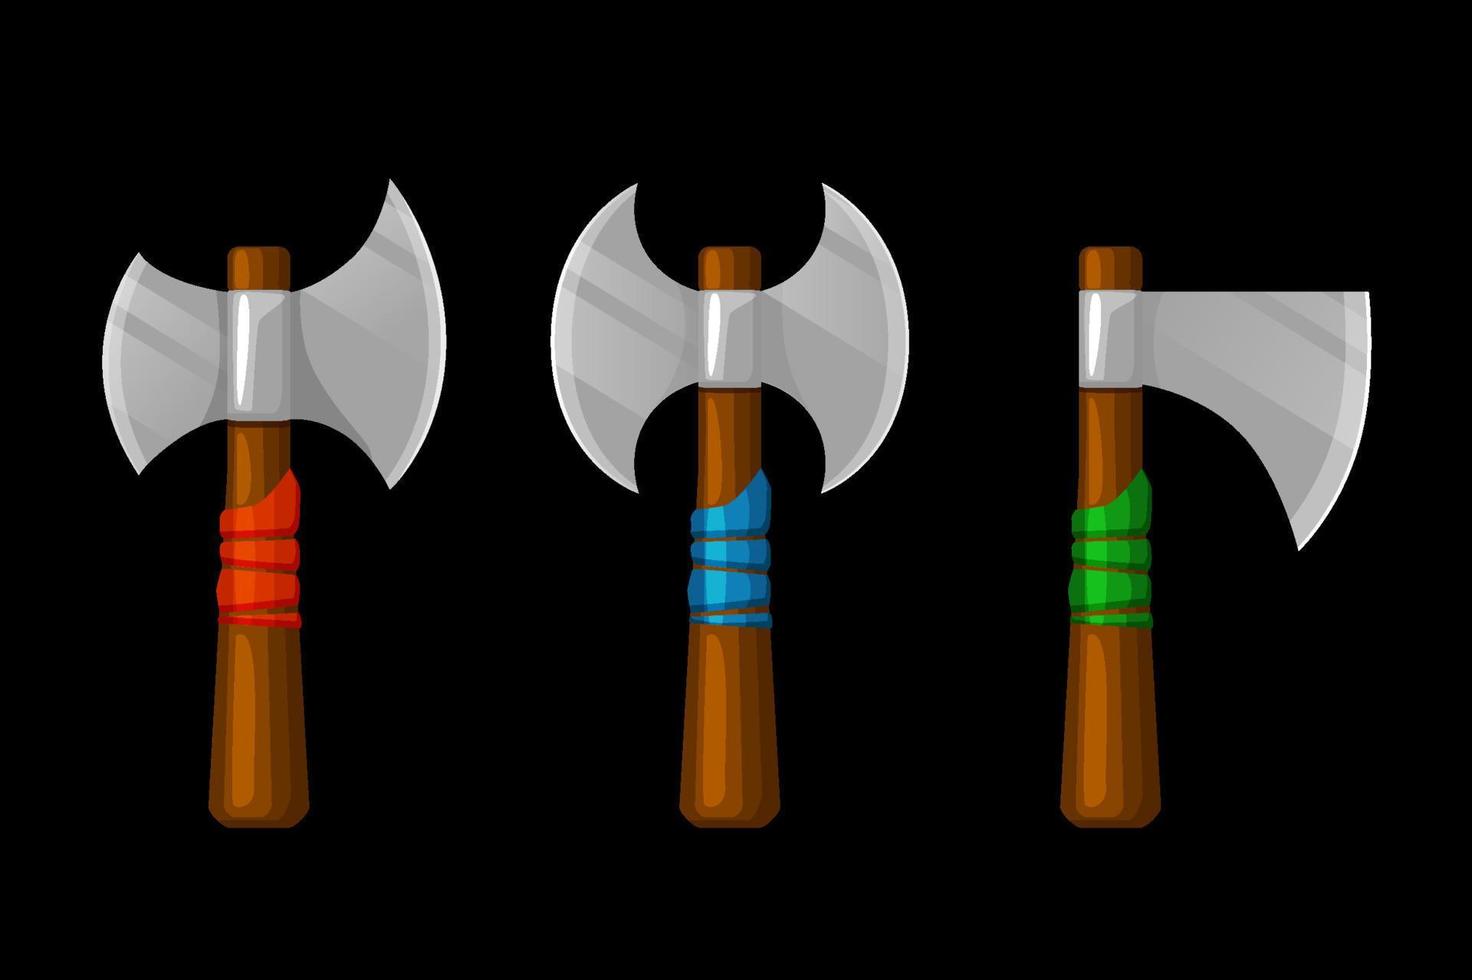 oude wapens, viking-strijdbijlen voor spelactiva. vectorillustratie set oude houten wapens, geïsoleerde assen voor grafisch ontwerp. vector